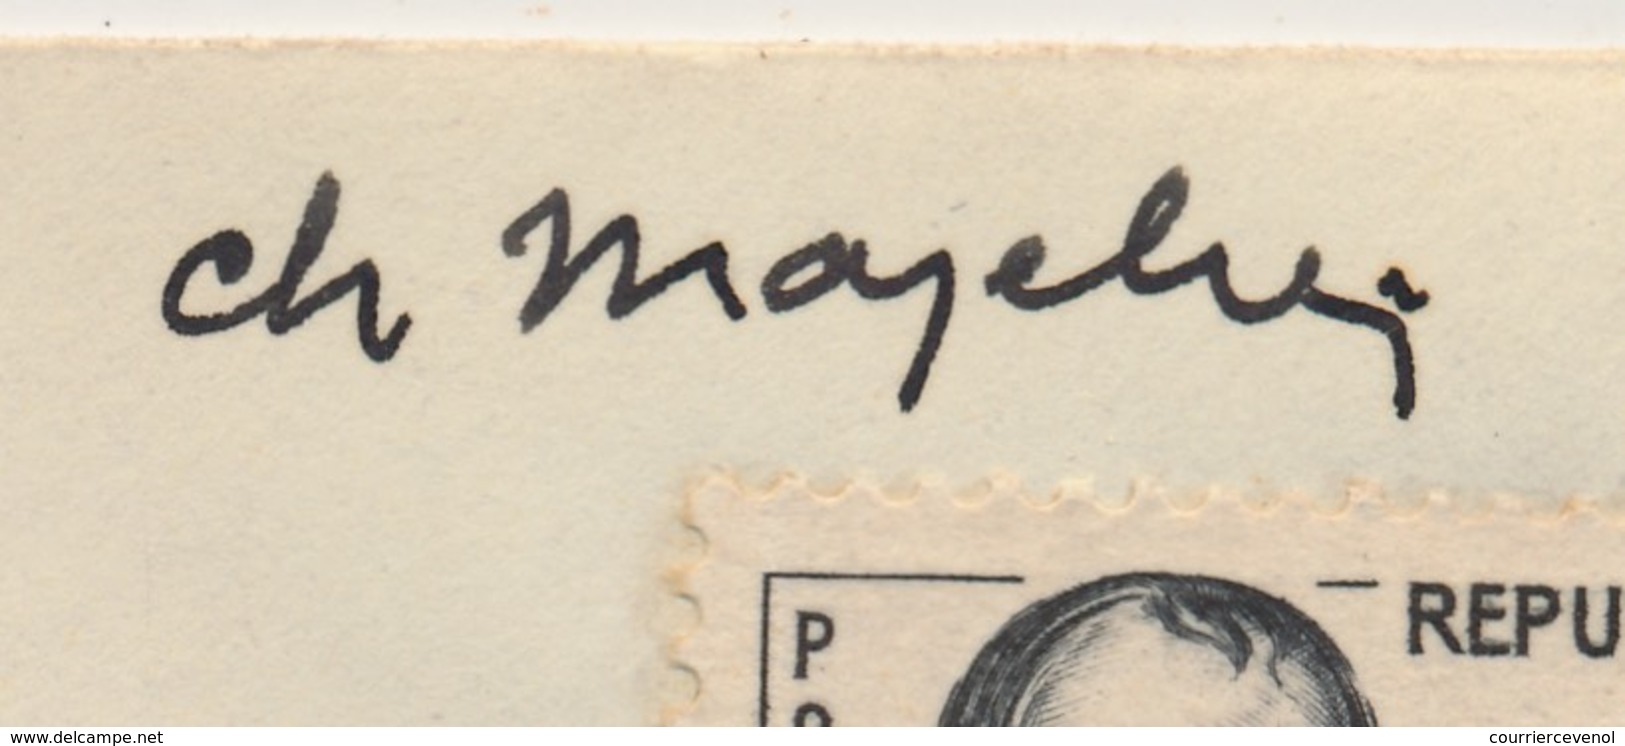 Enveloppe Scotem - 0,30 + 0,10 Général DROUOT Obl. Cachet Illustré Congrès NANCY 1961 Signature MAZELIN - Briefe U. Dokumente